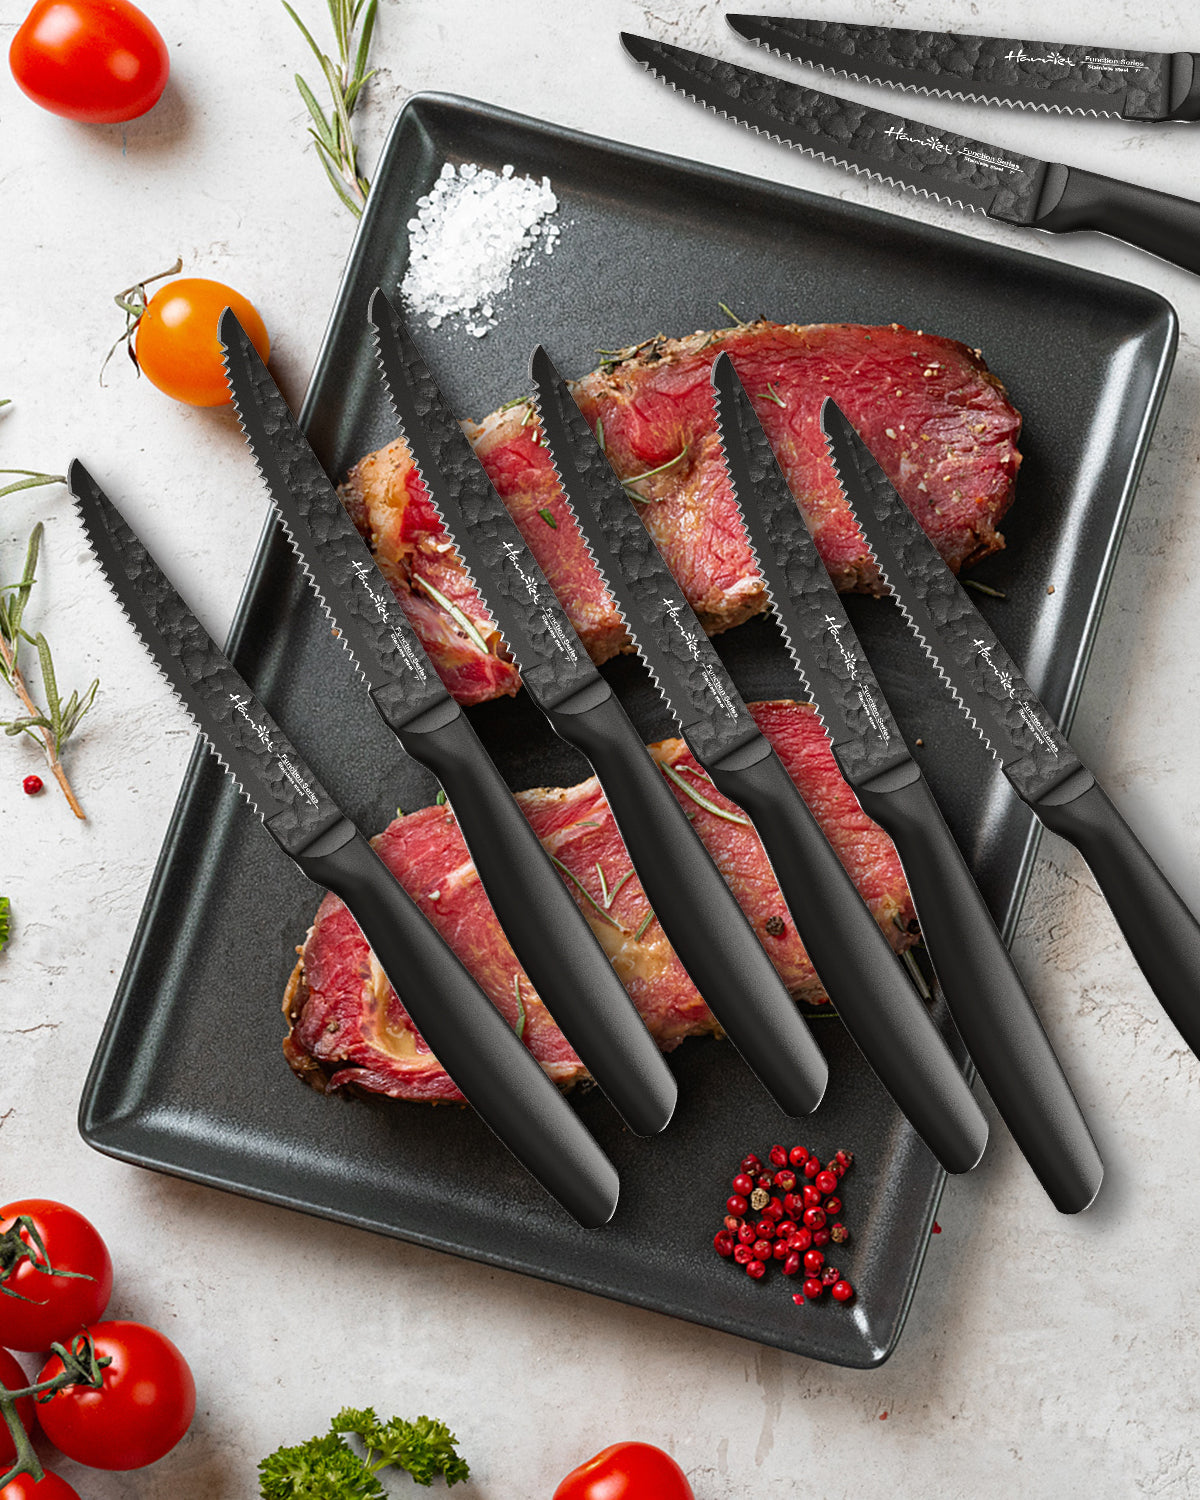 dearithe Serrated-Steak Knives Set of 12, Black Full-Tang Triple Rivet  Steak Knife Sets, 4.5 Inch, For Kitchen Restaurant Tableware Camping